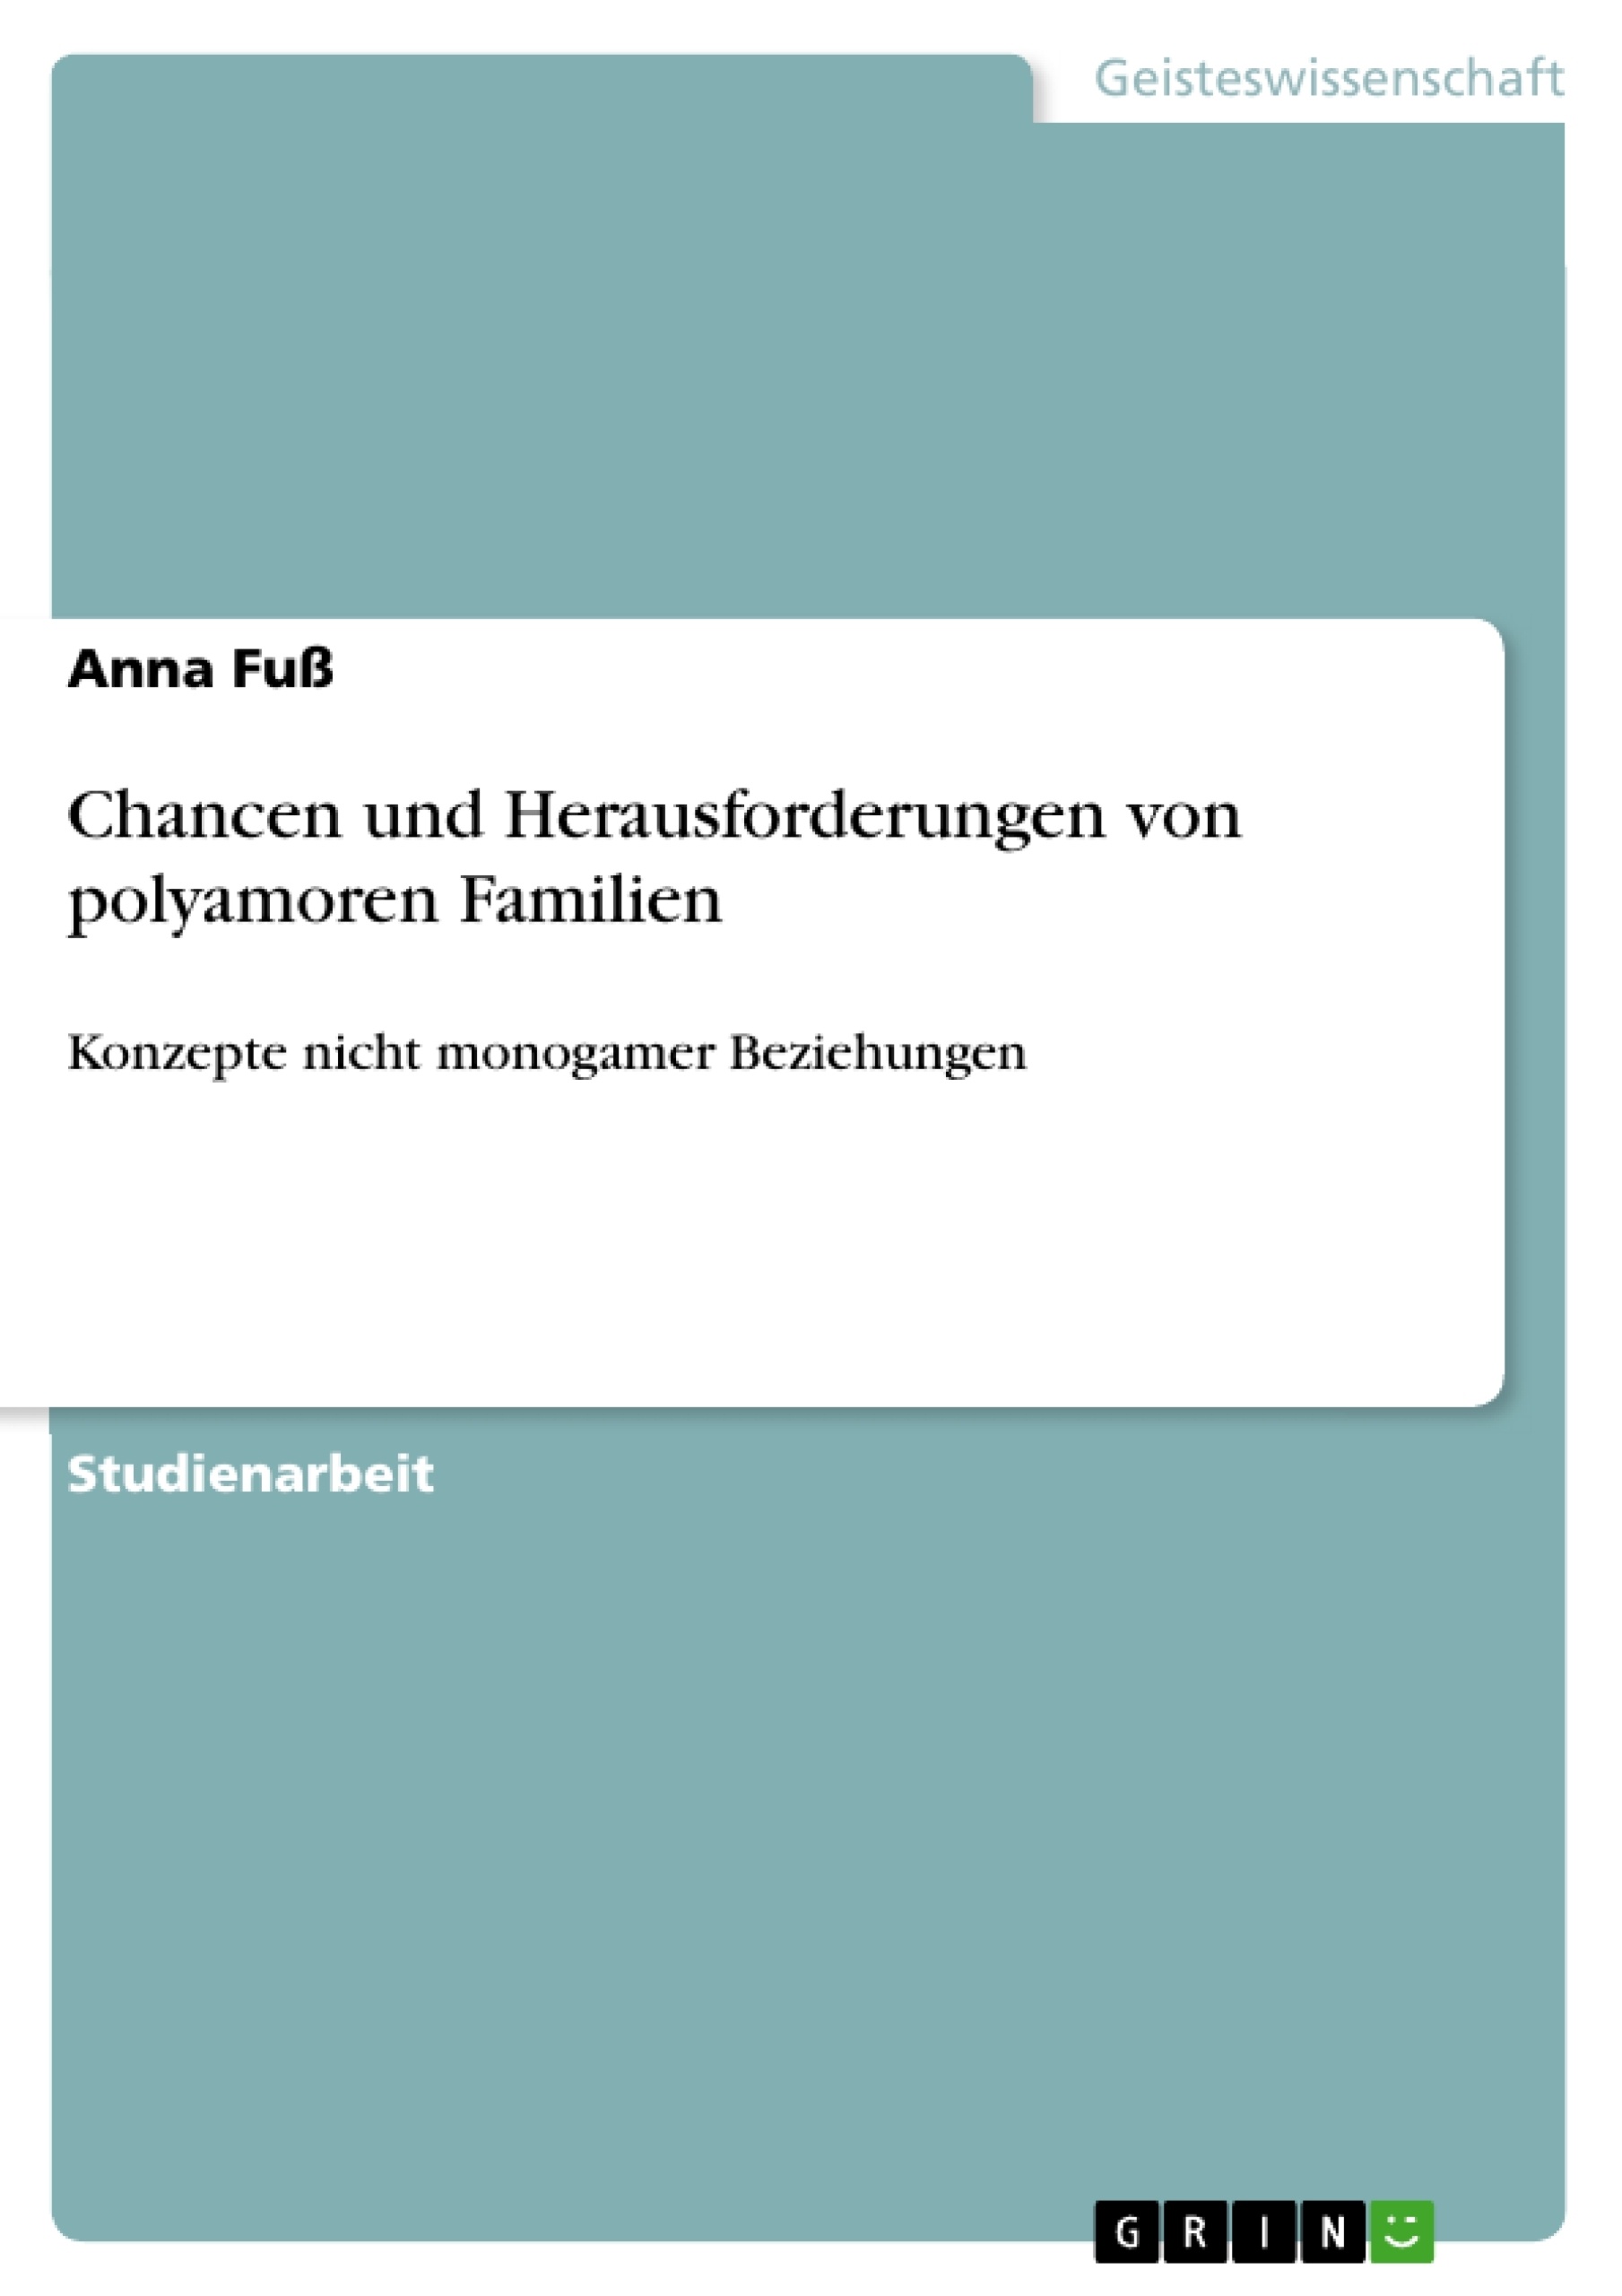 Titre: Chancen und Herausforderungen von polyamoren Familien